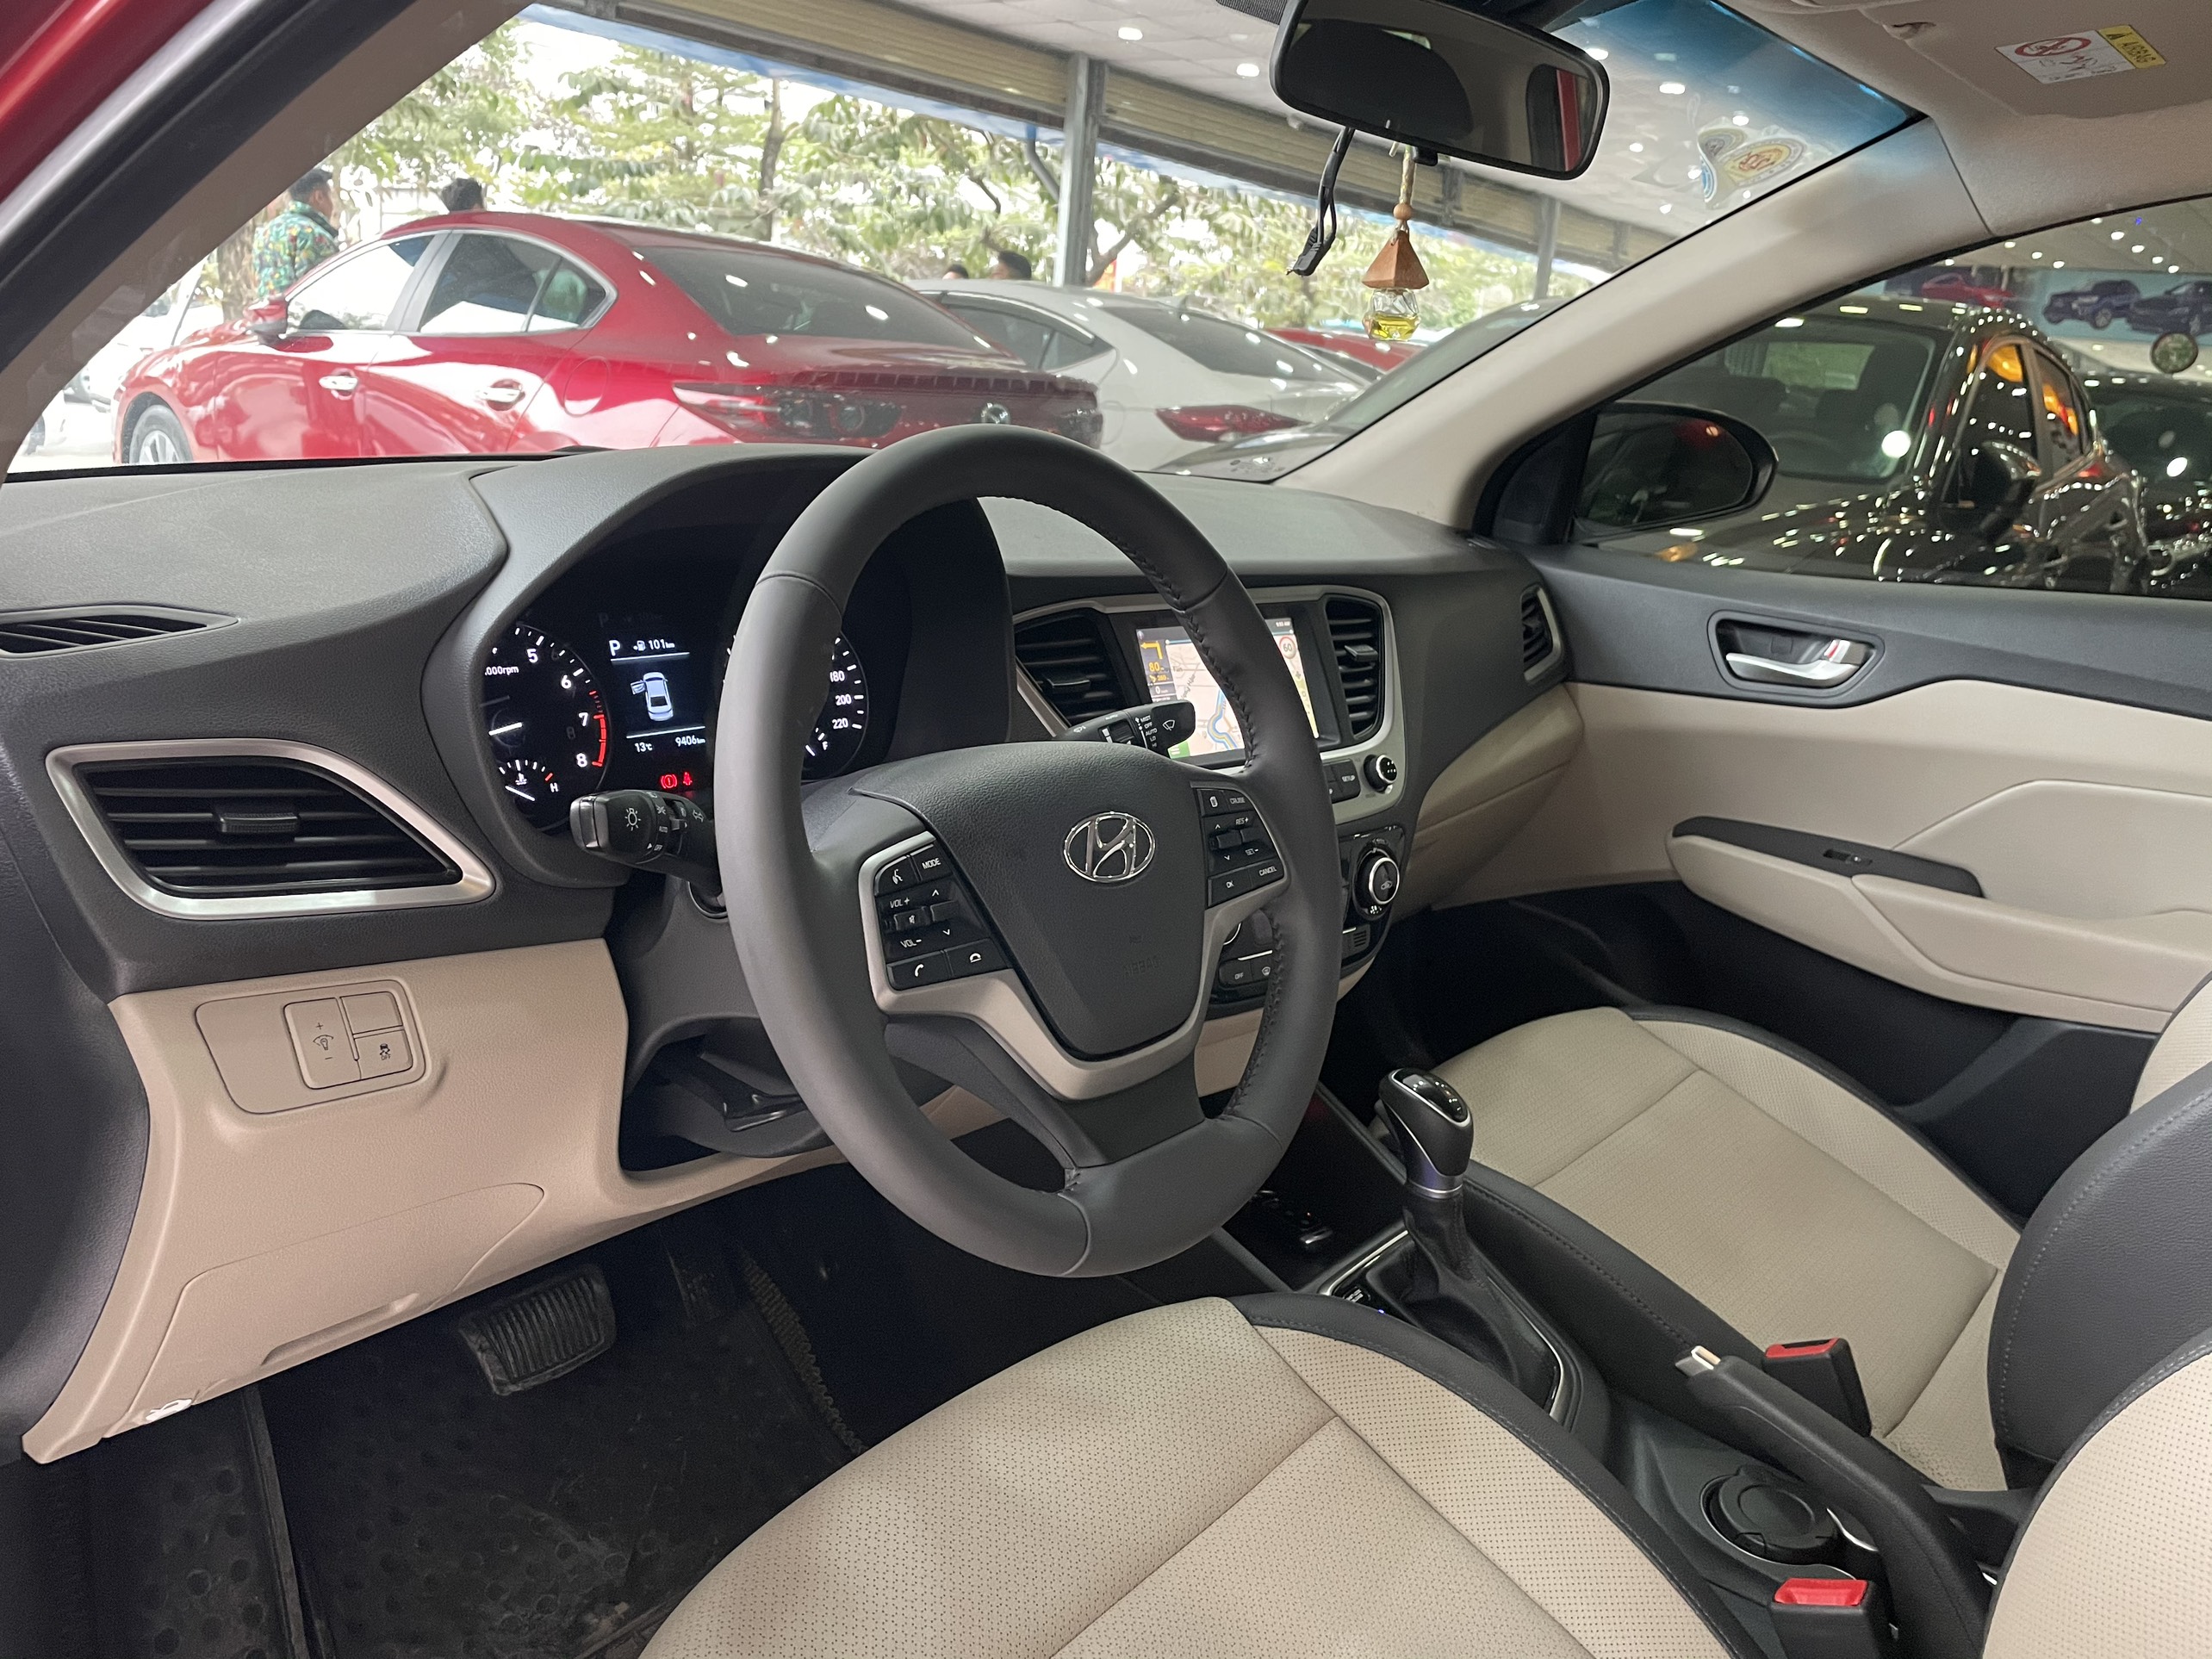 Hyundai Accent ATH 2019 - 7